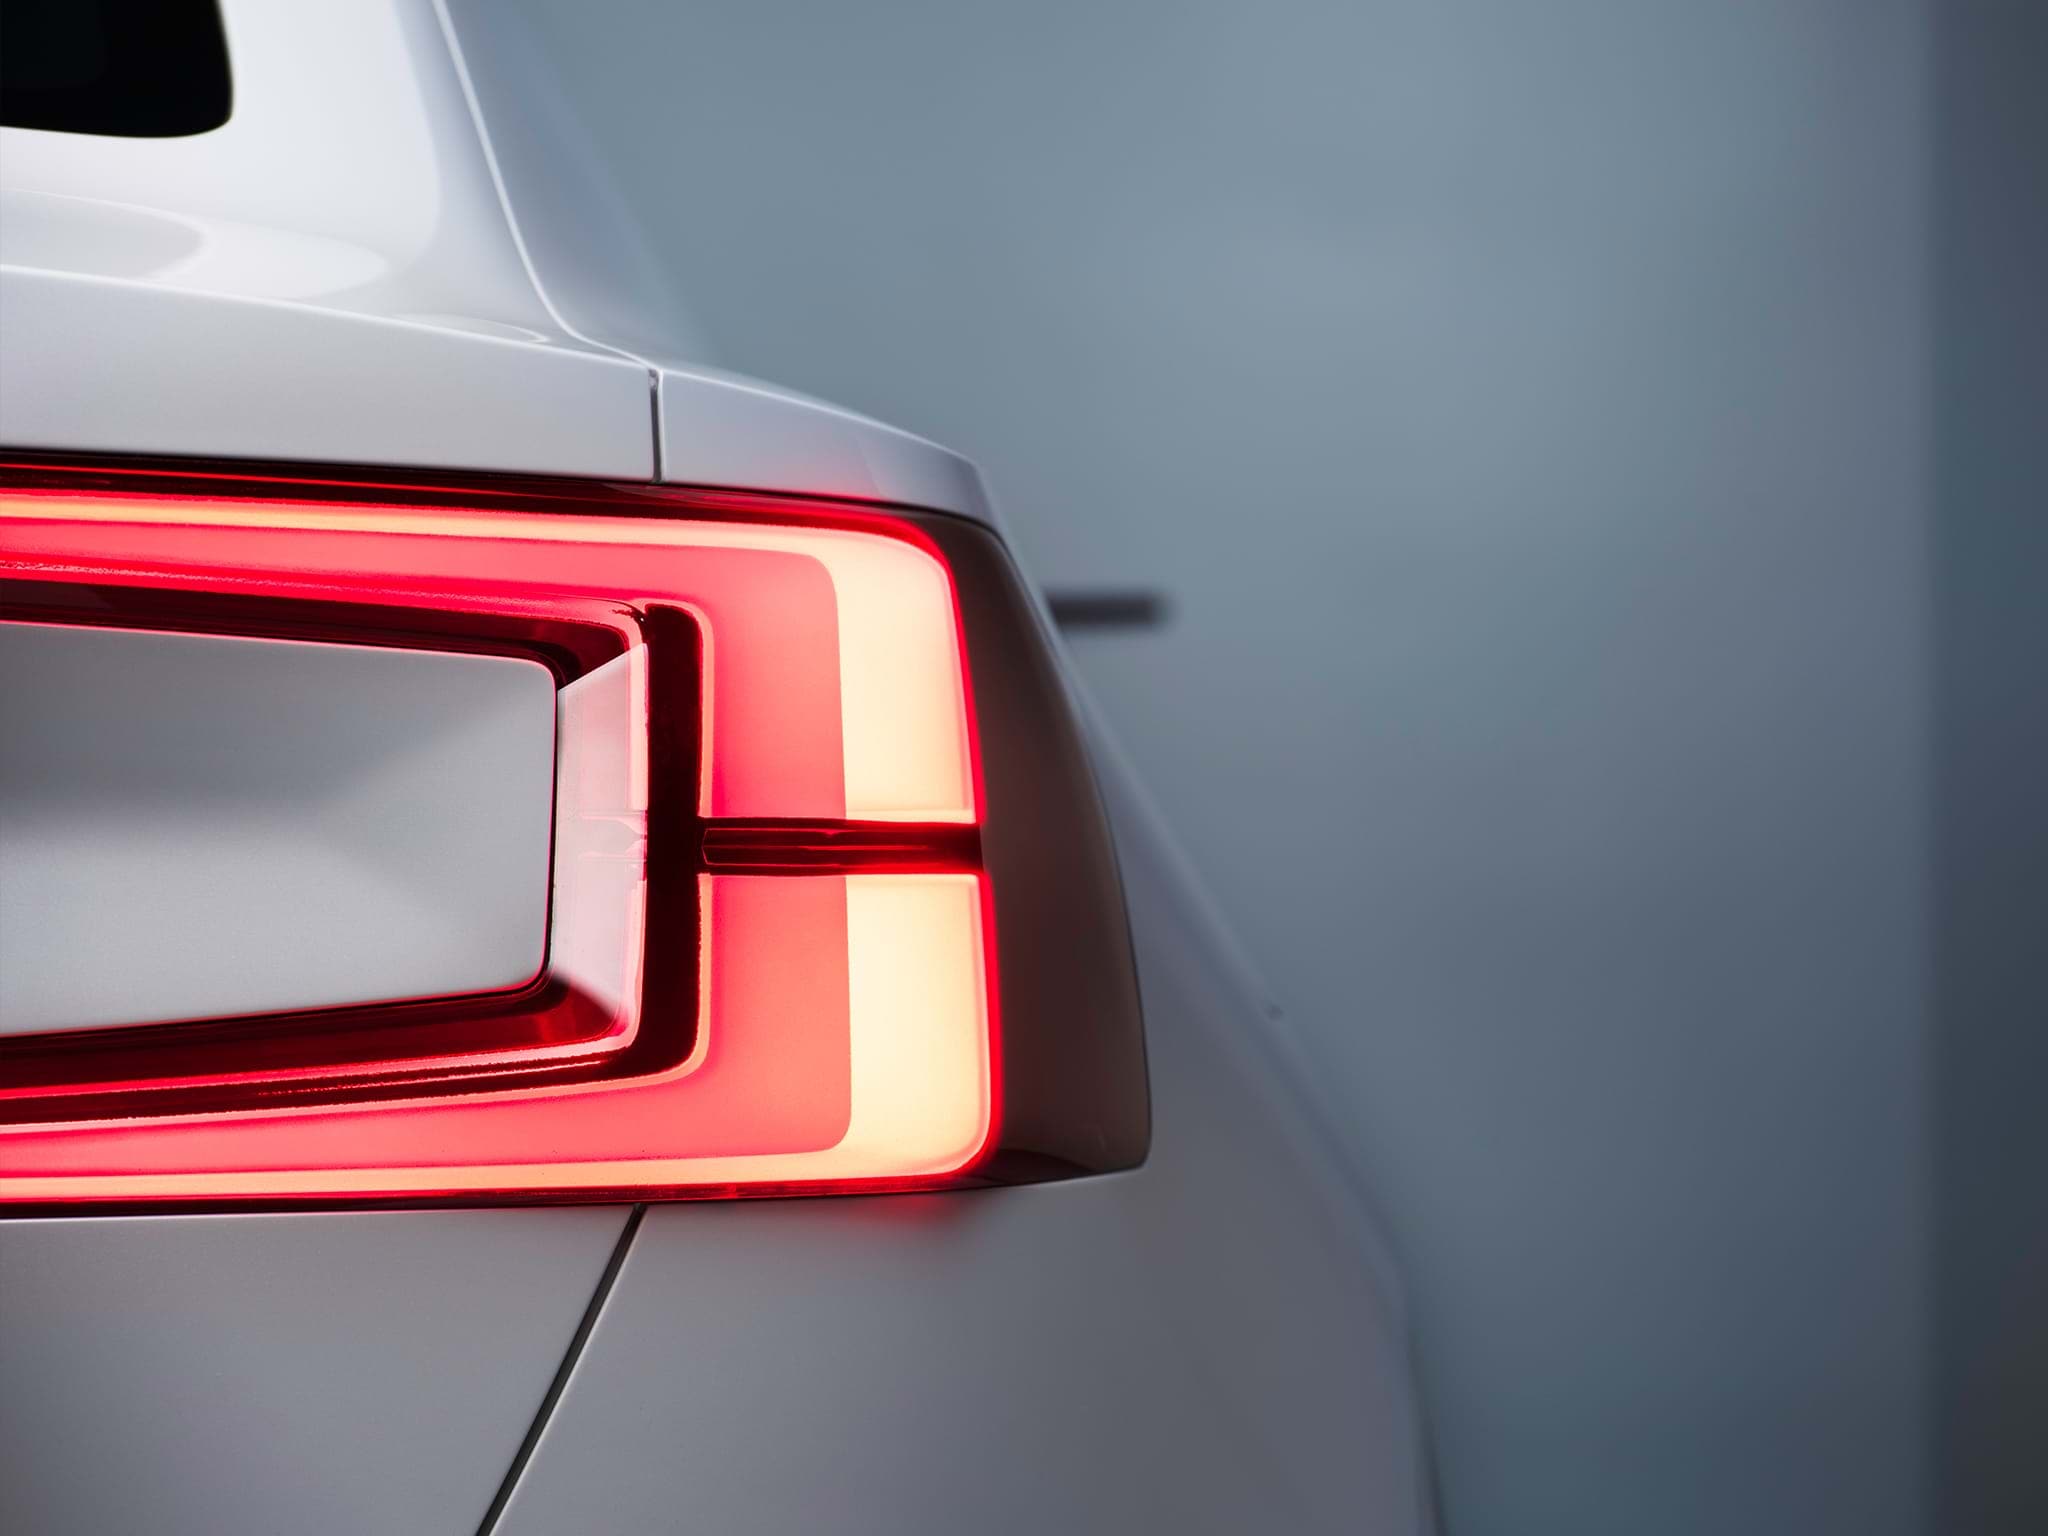 Gedeeltelijk zicht van de achterkant van een witte Volvo Concept 40 berline met ingeschakelde achterlichten